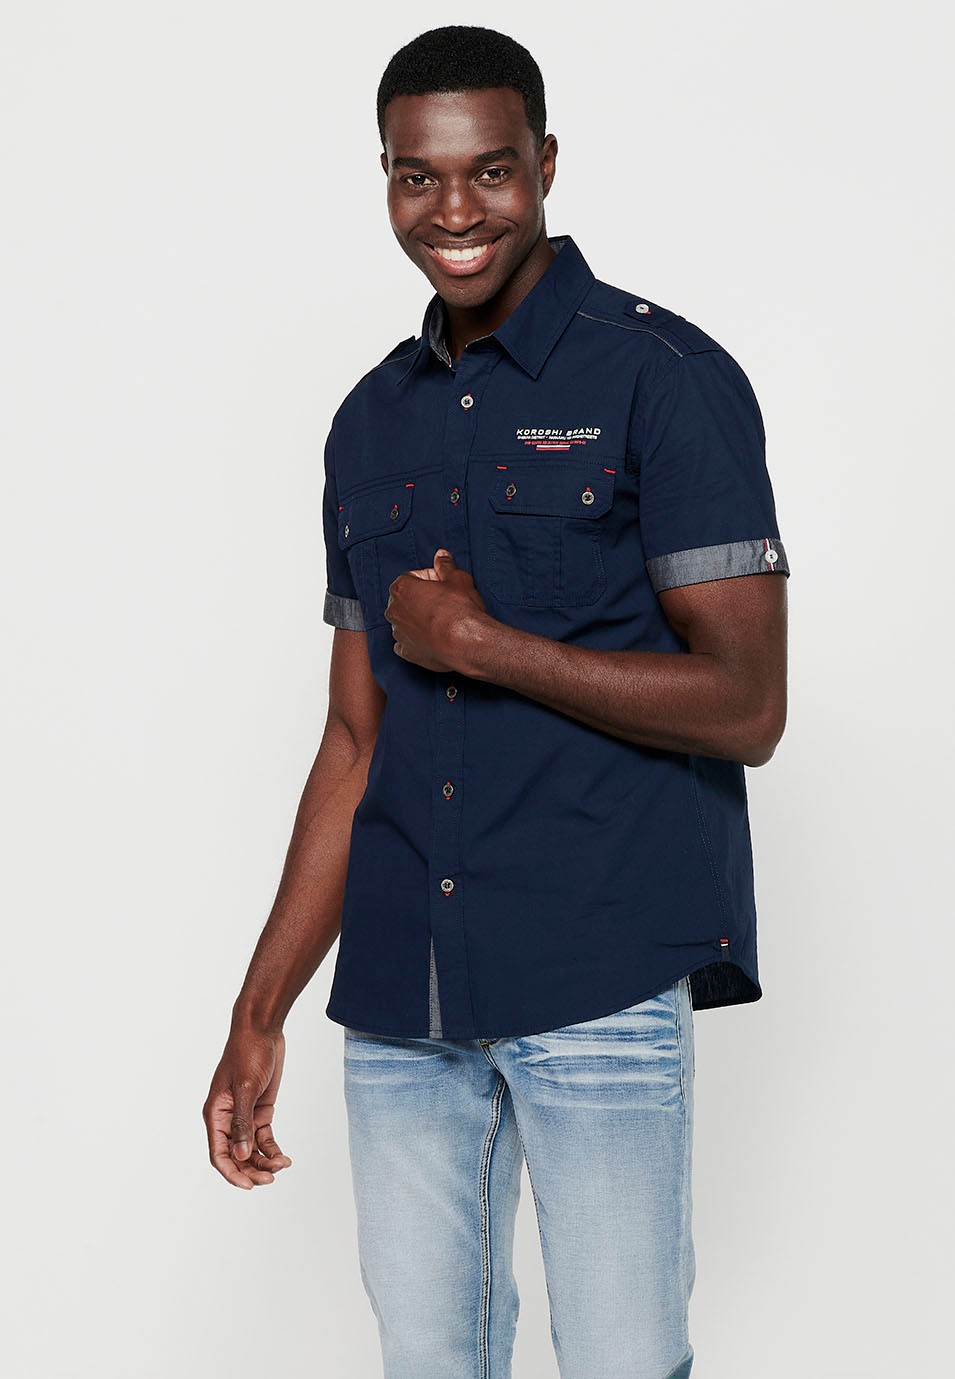 Cotton shirt, short sleeve, shoulder details, navy color for men 4